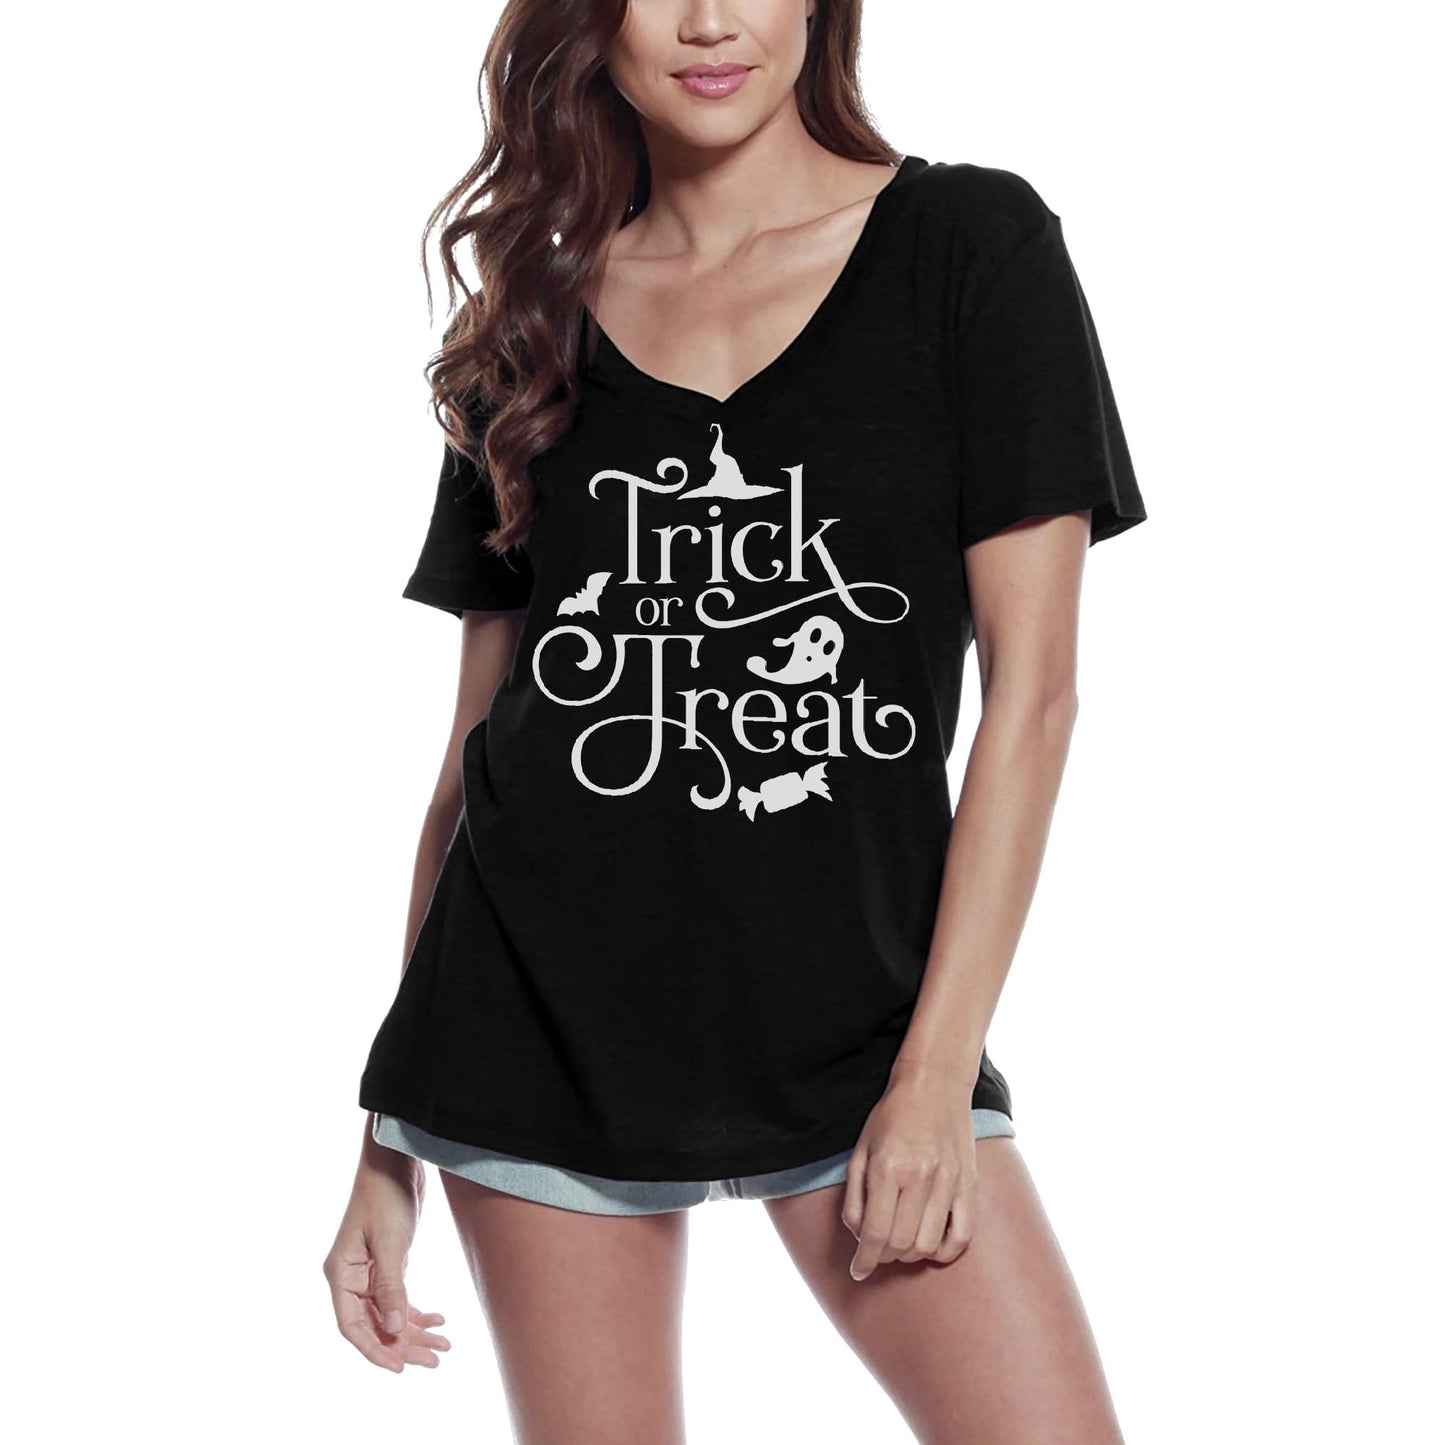 ULTRABASIC Women's T-Shirt Trick or Treat Halloween - Short Sleeve Tee Shirt Tops